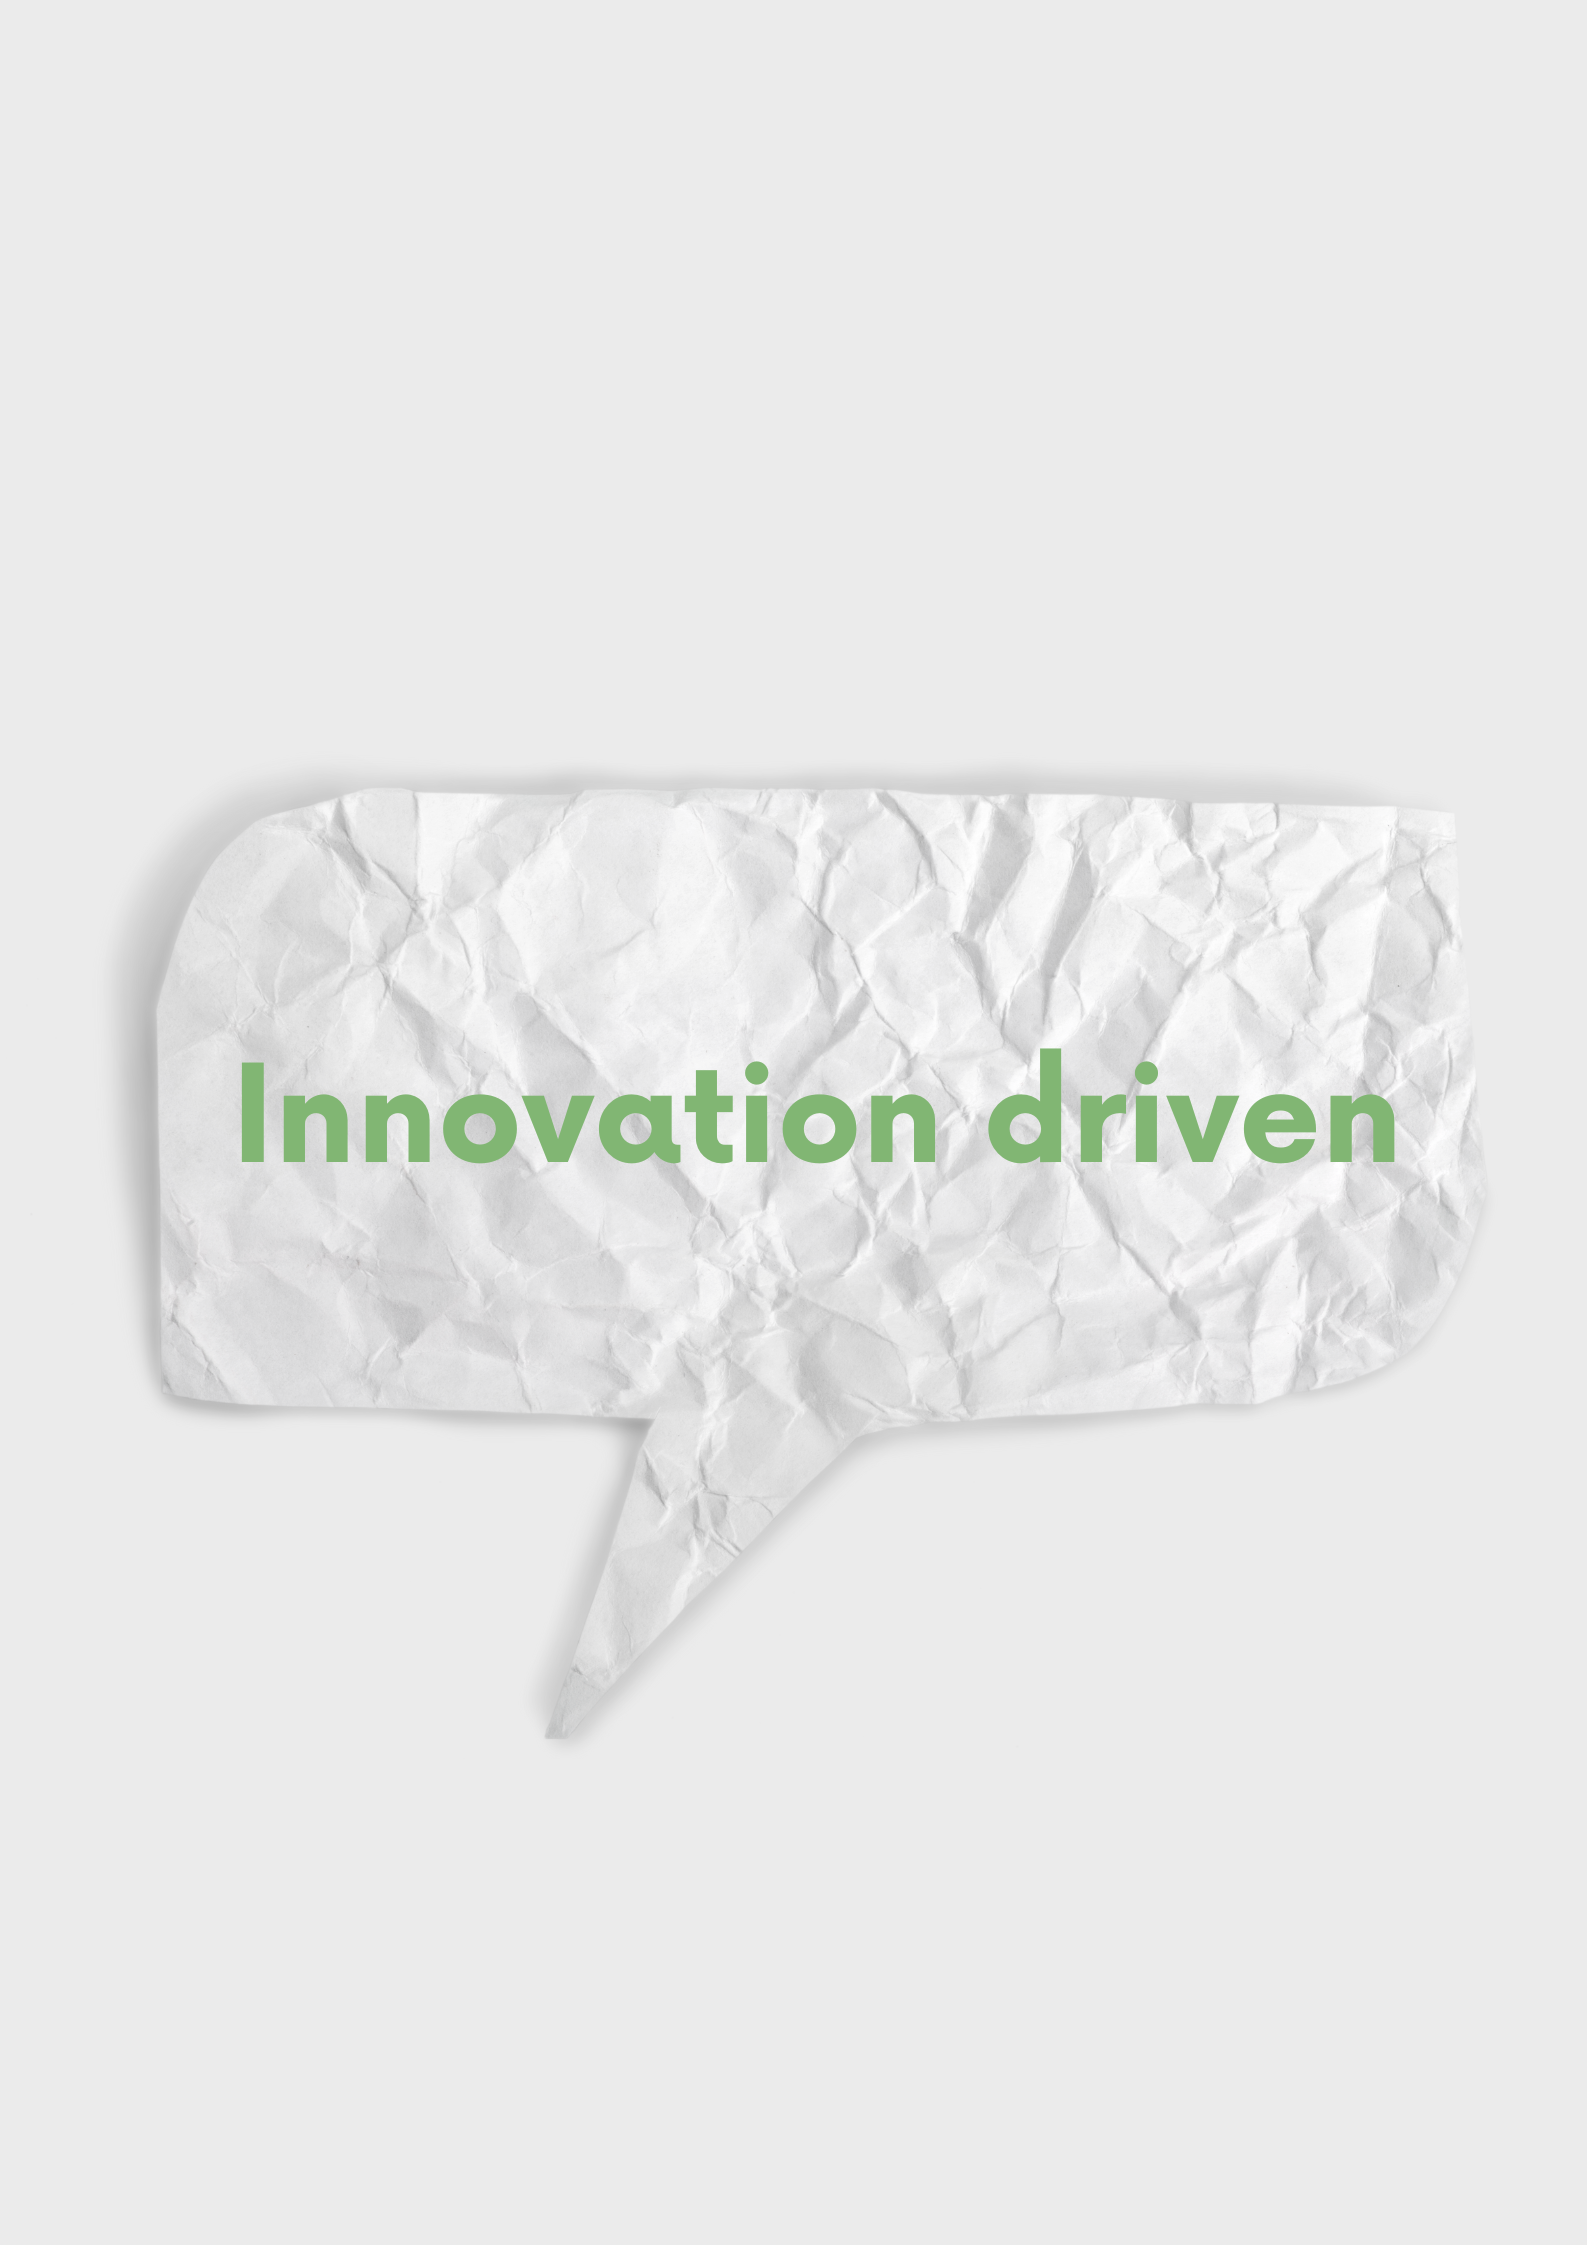 Innovation driven